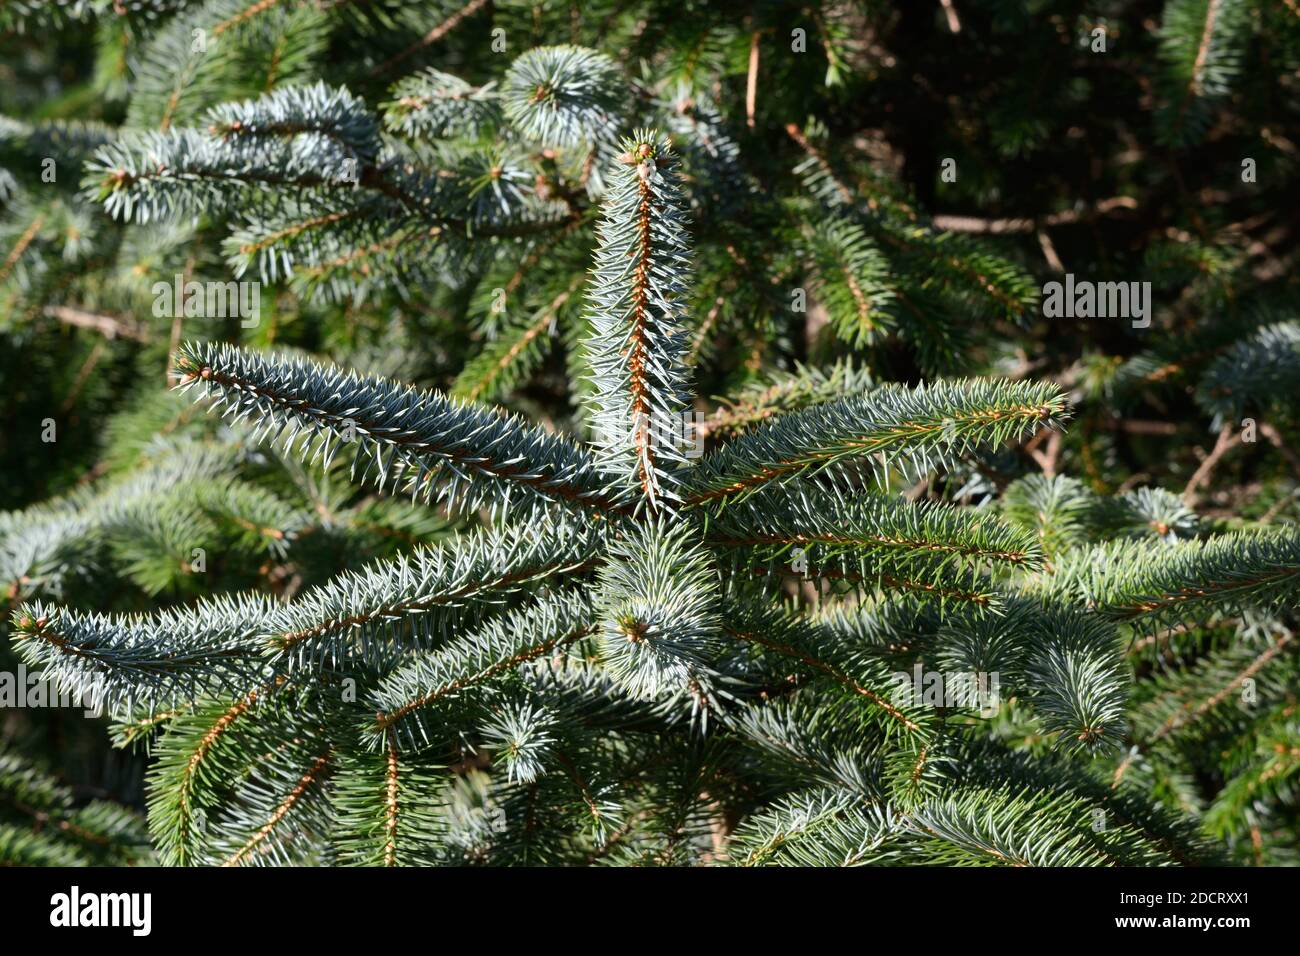 Hojas verdes azules agujas del picea Sitka Picea sitchensis árbol de coníferas Foto de stock